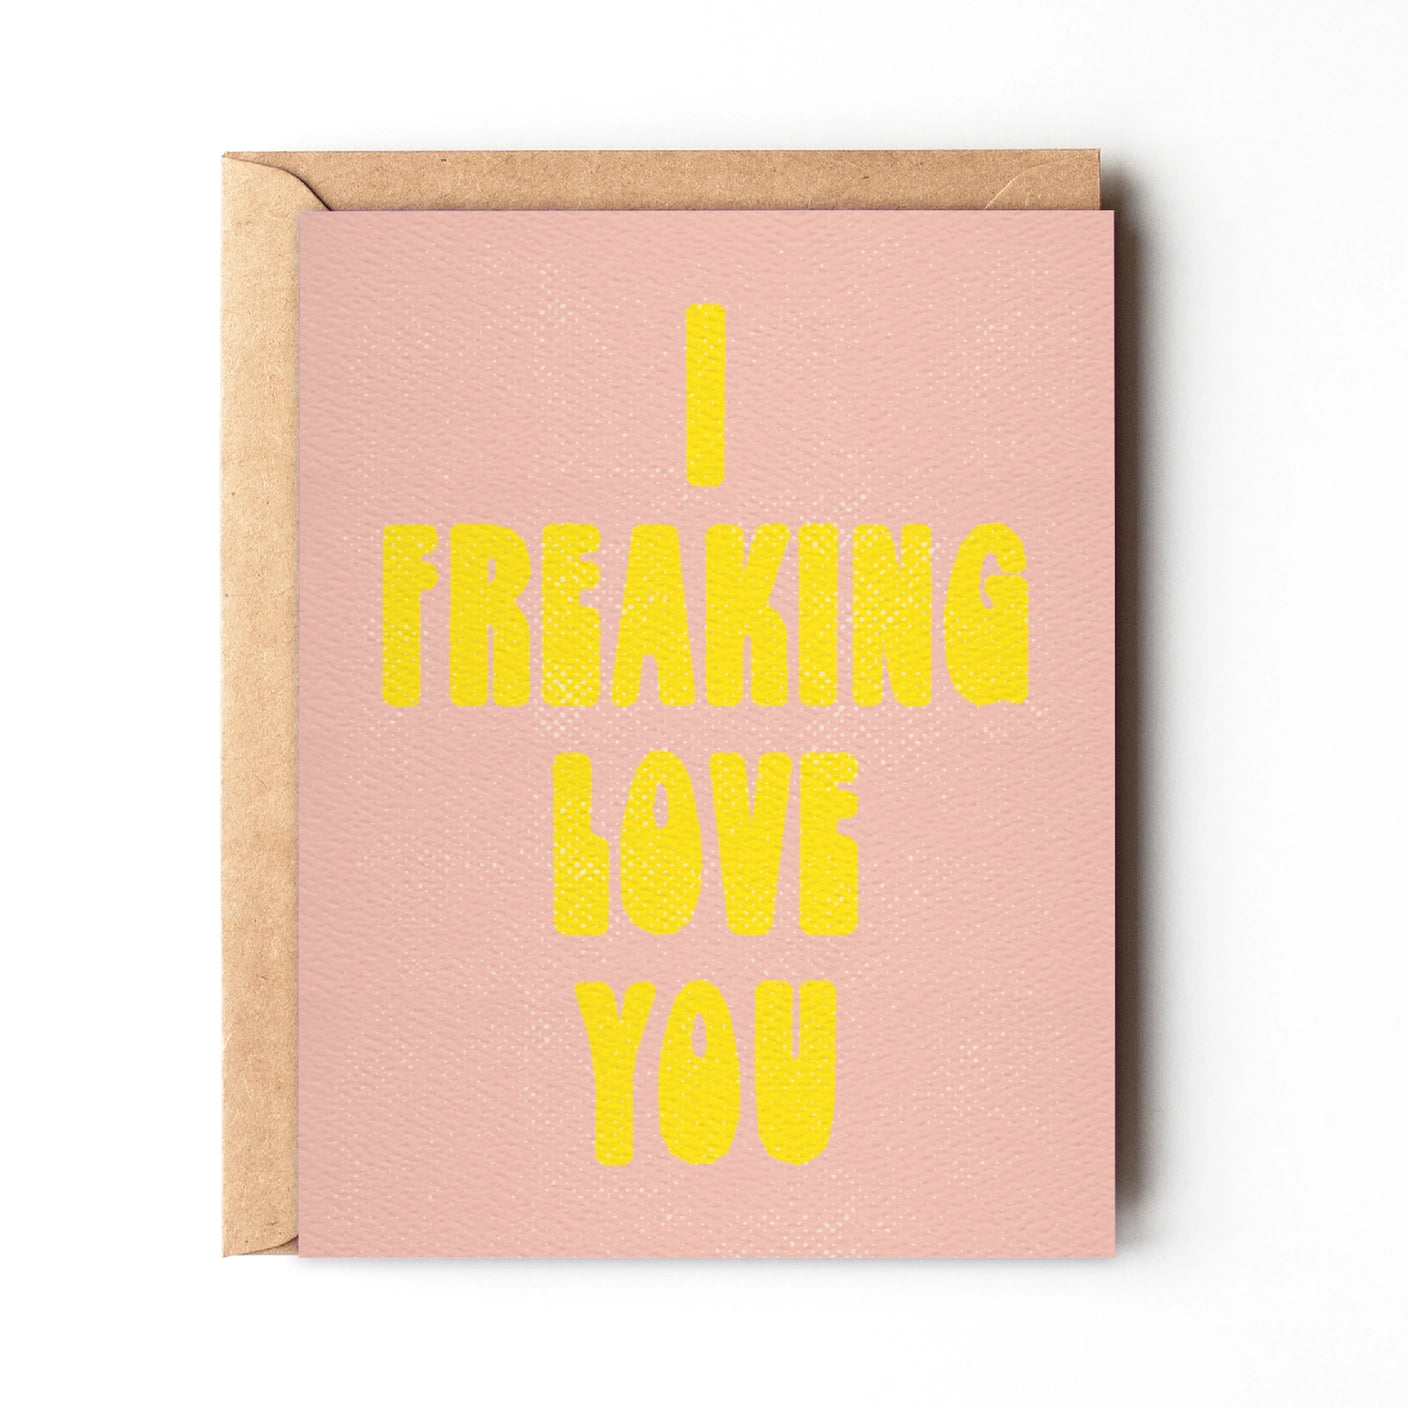 I Freaking Love You- Greeting Card